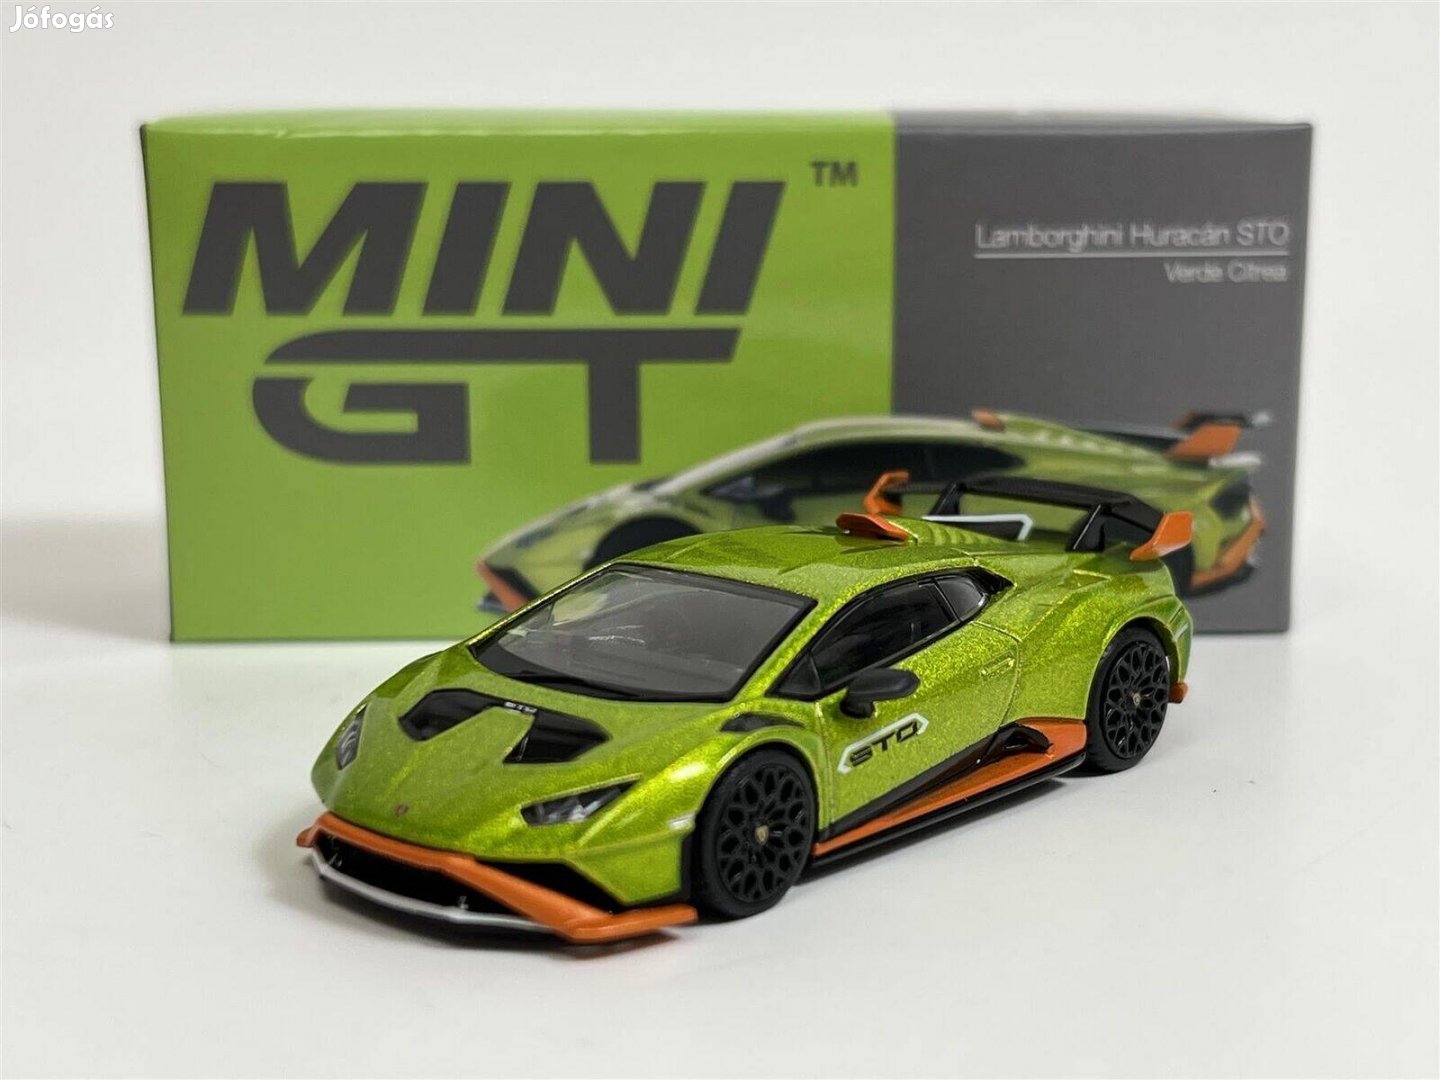 Mini GT MGT00547 Lamborghini Huracán STO Verde Citrea